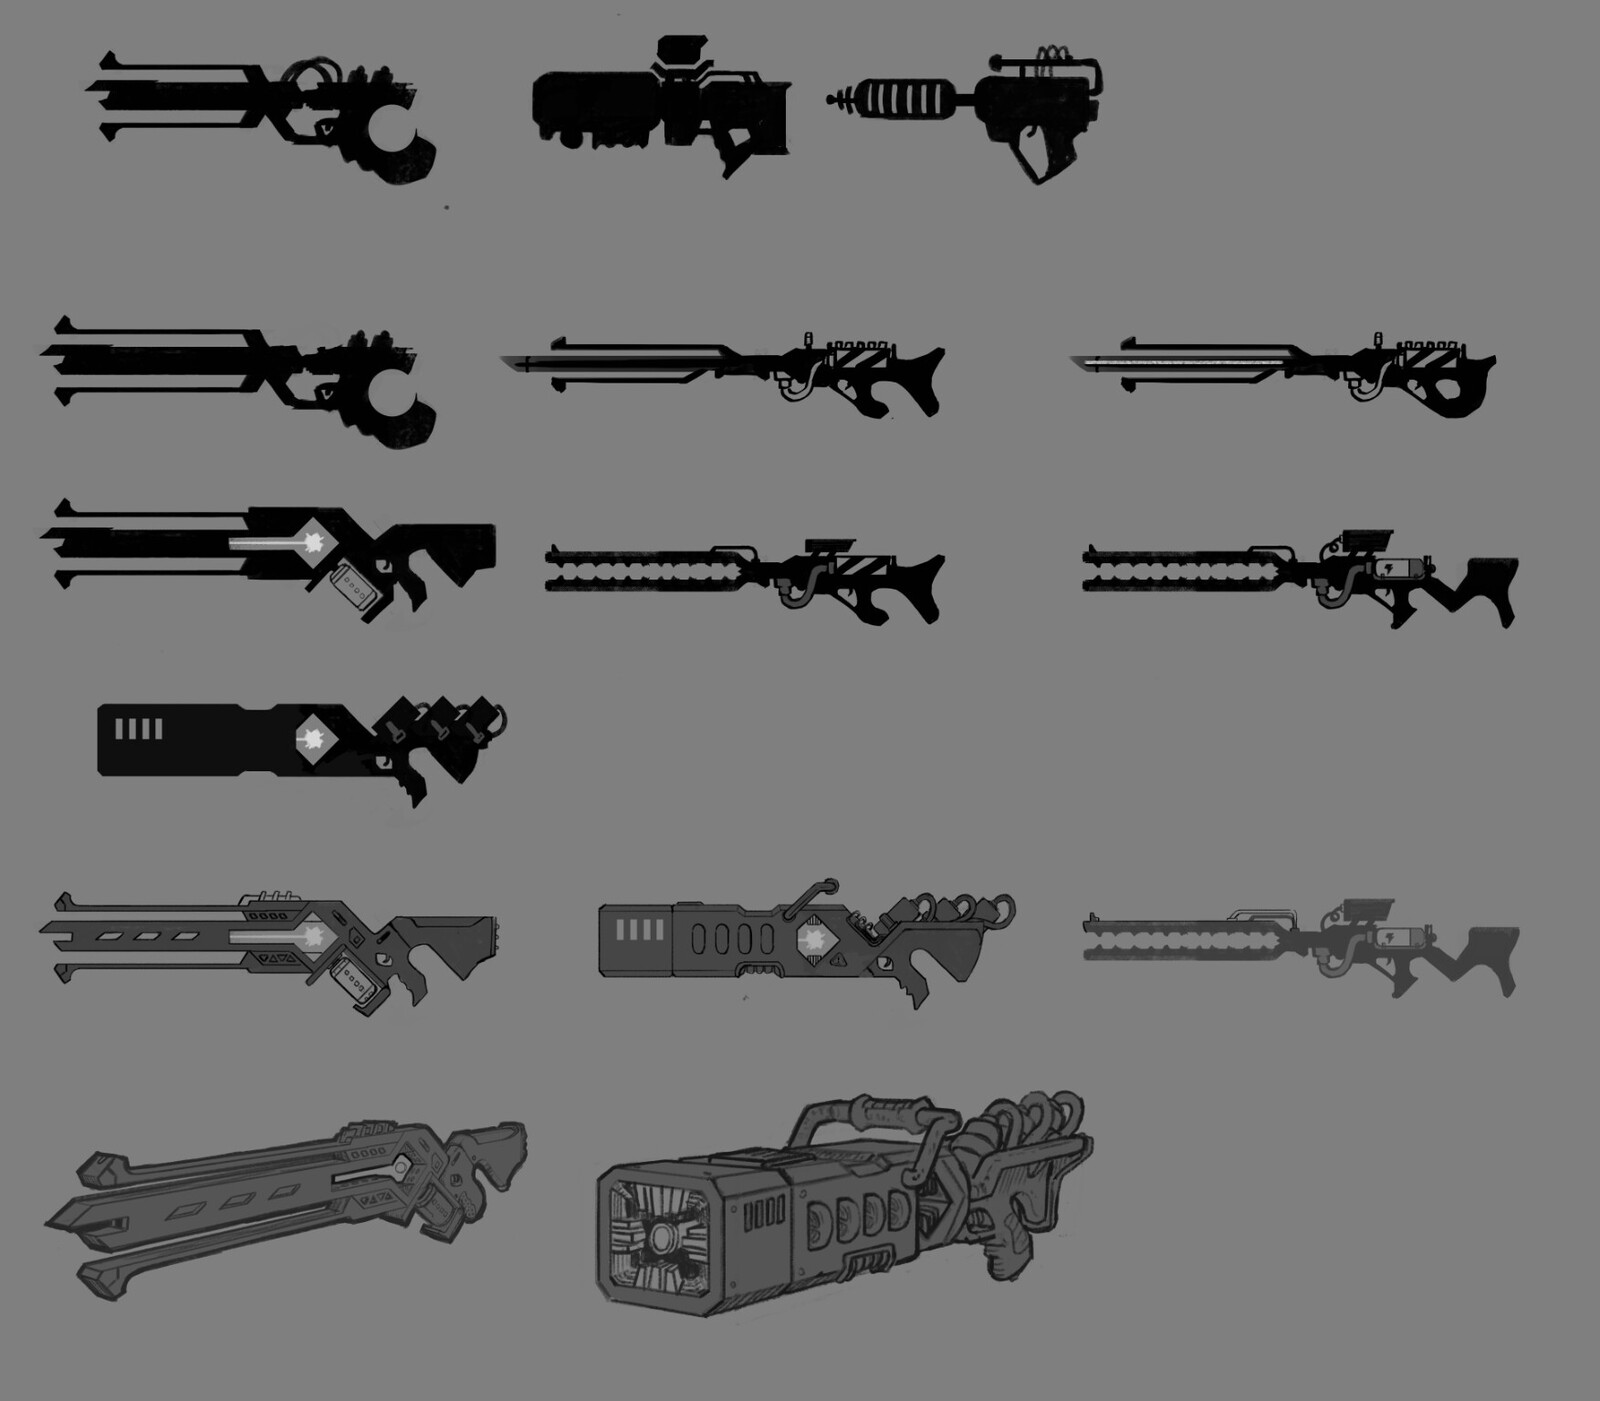 Weapon design exploration.